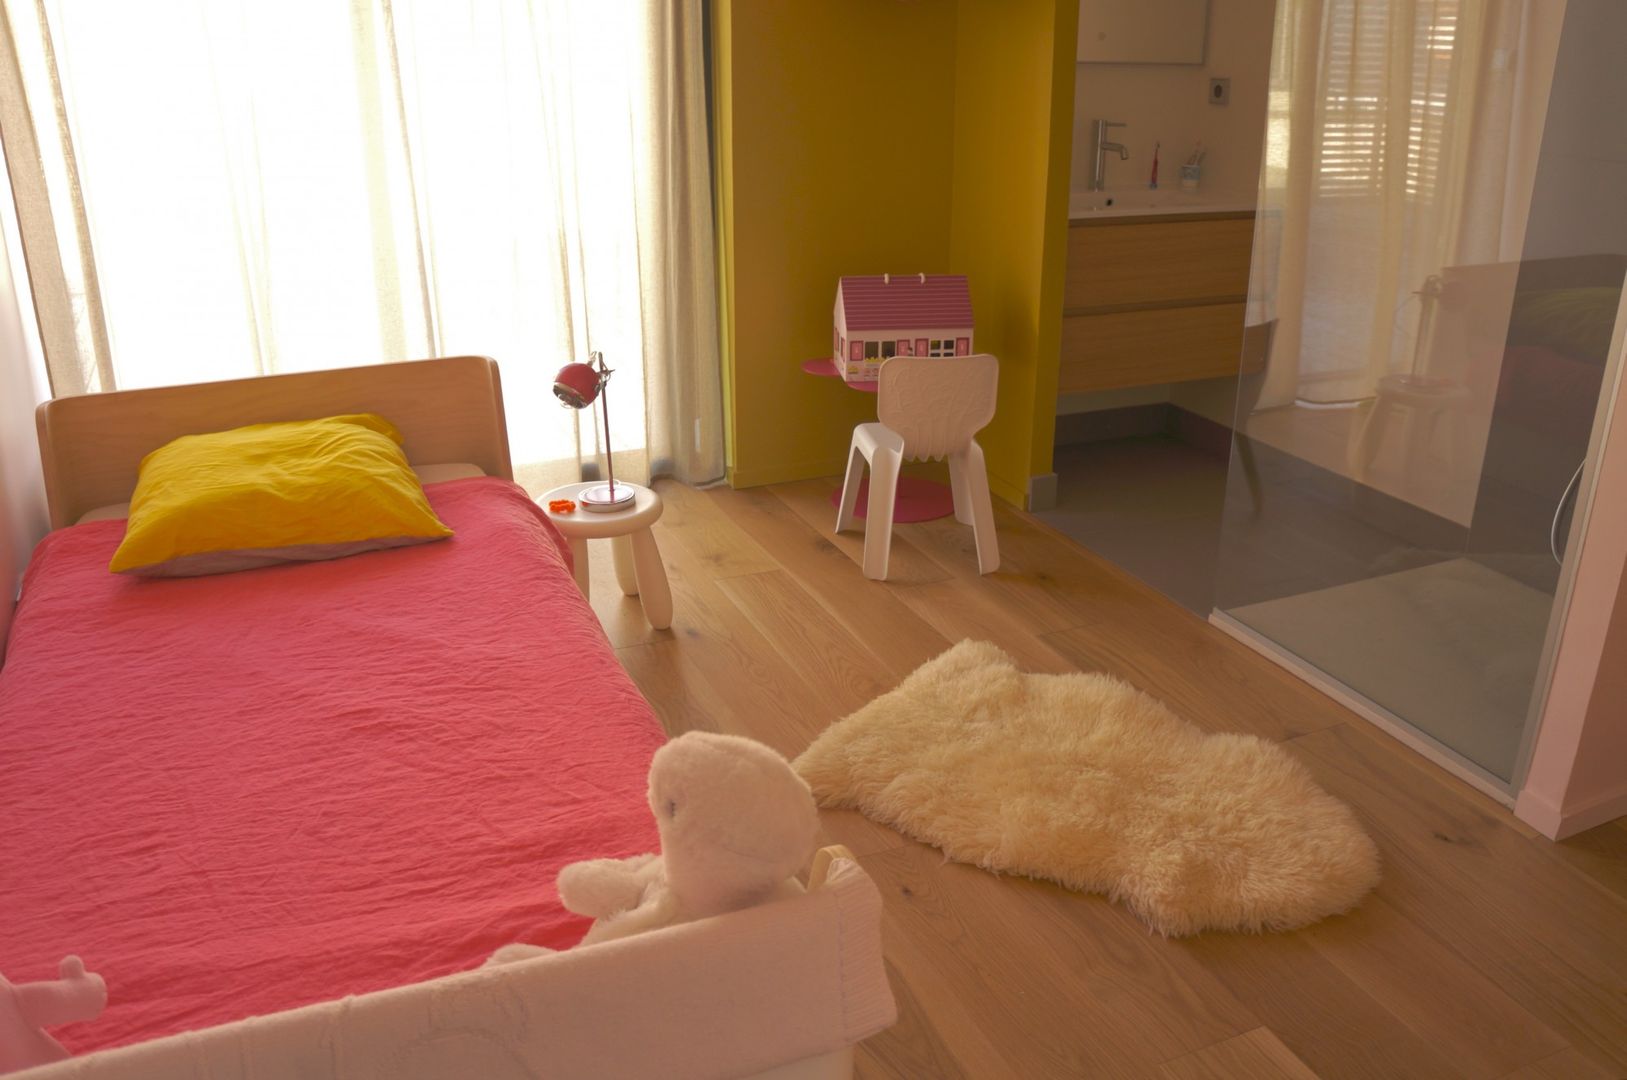 Maison - Parc bordelais, AGENCE-COULEUR AGENCE-COULEUR Детская комната в стиле модерн